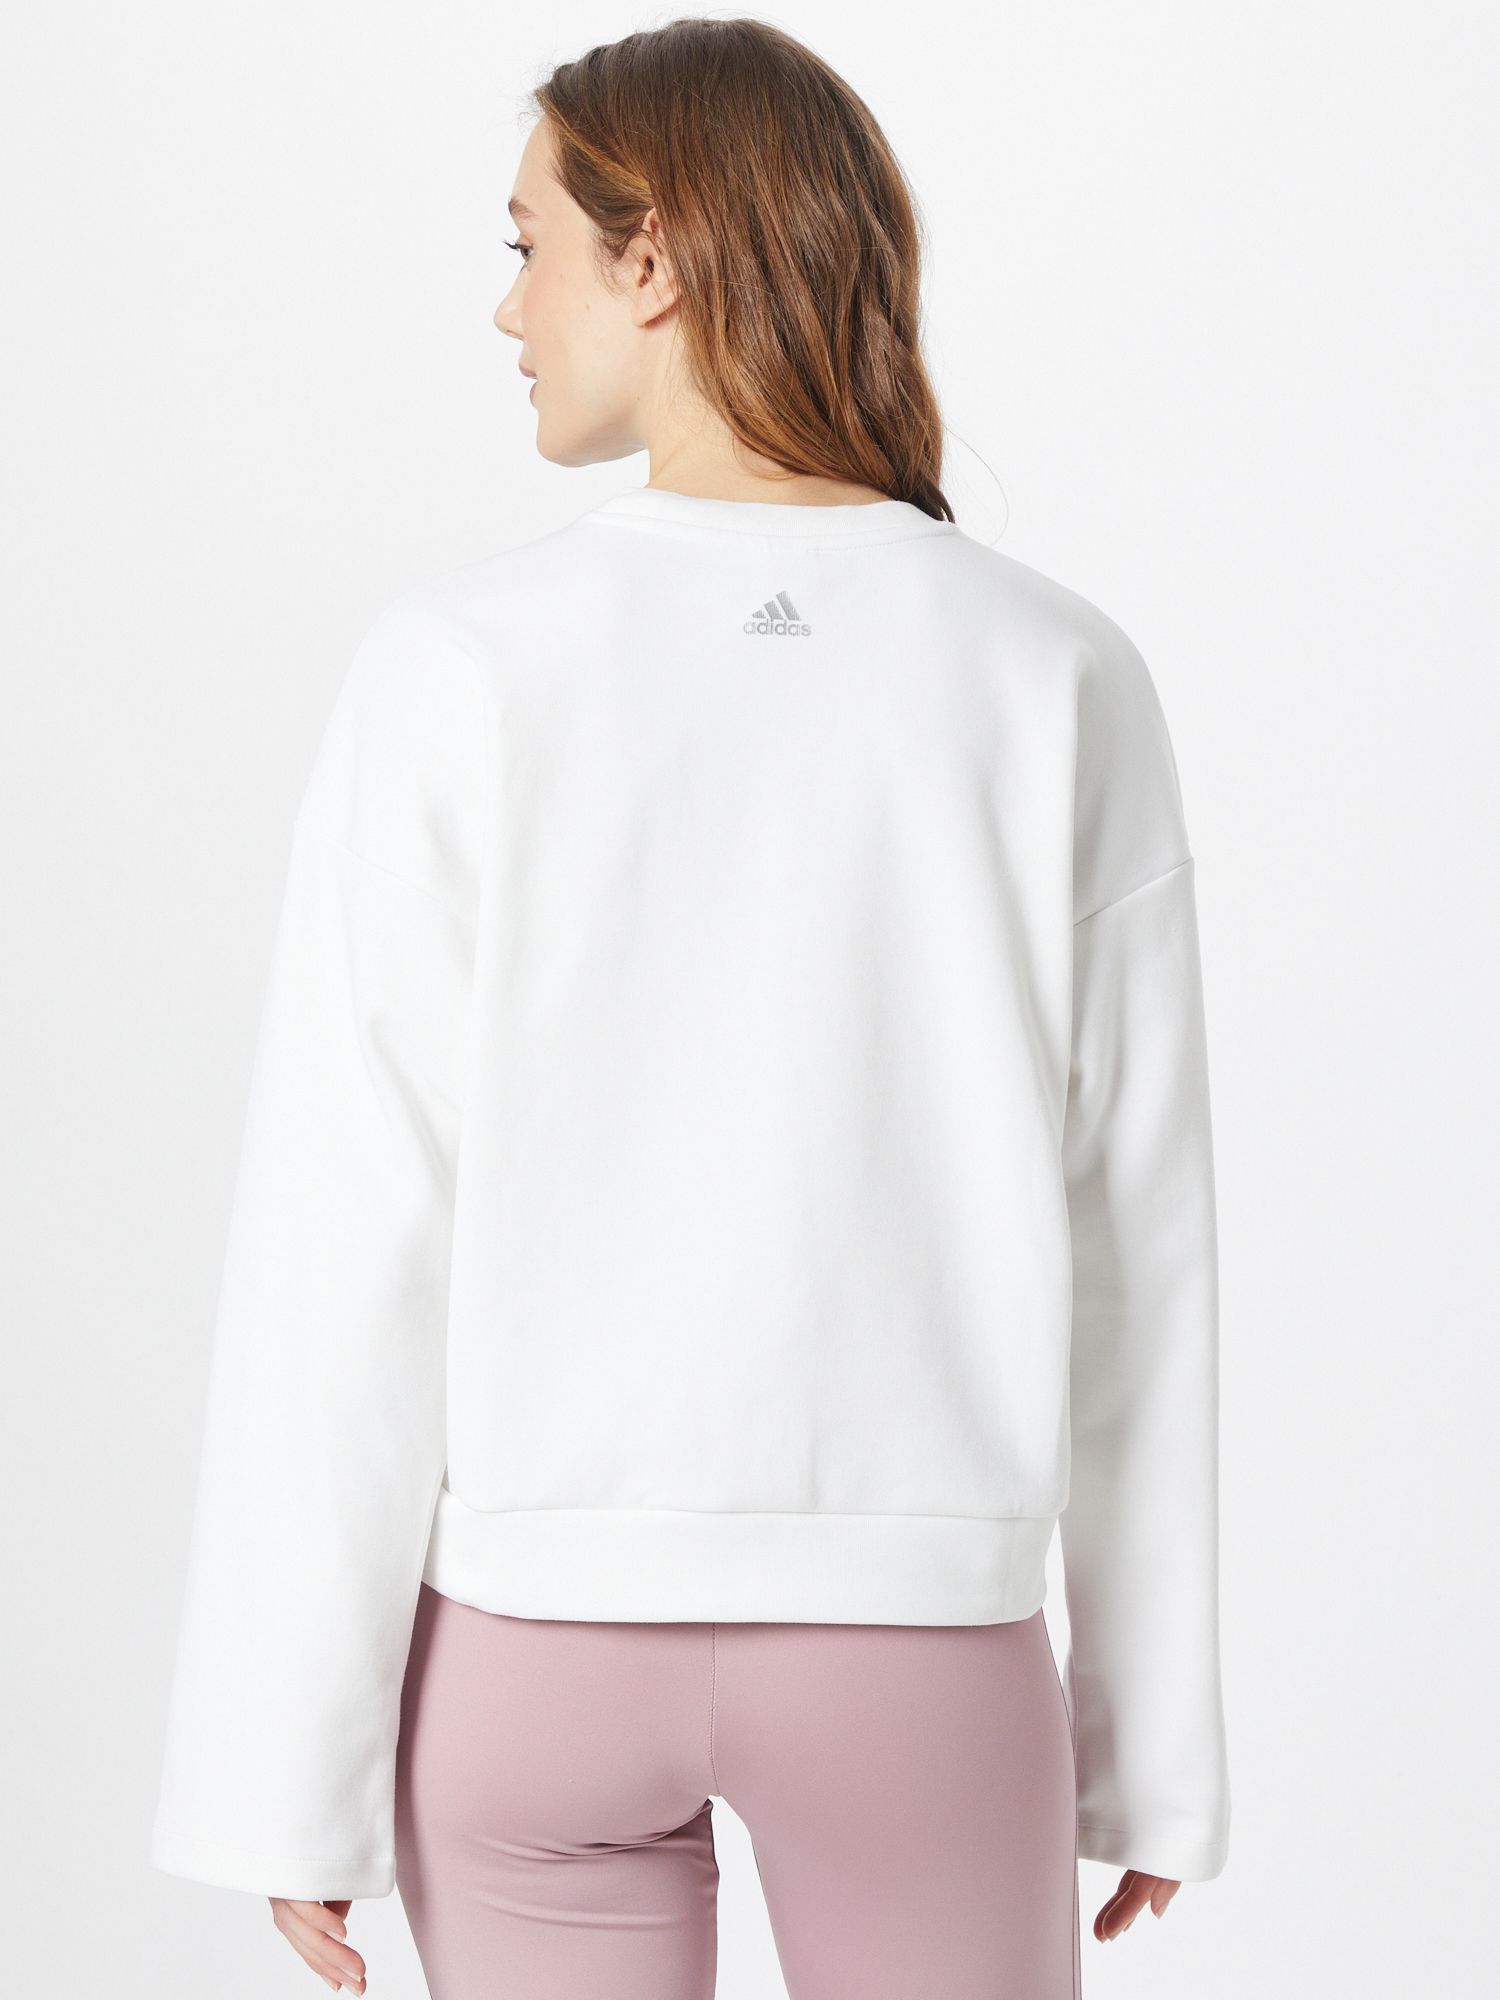 ADIDAS PERFORMANCE Sweatshirt in Weiß, Pink 